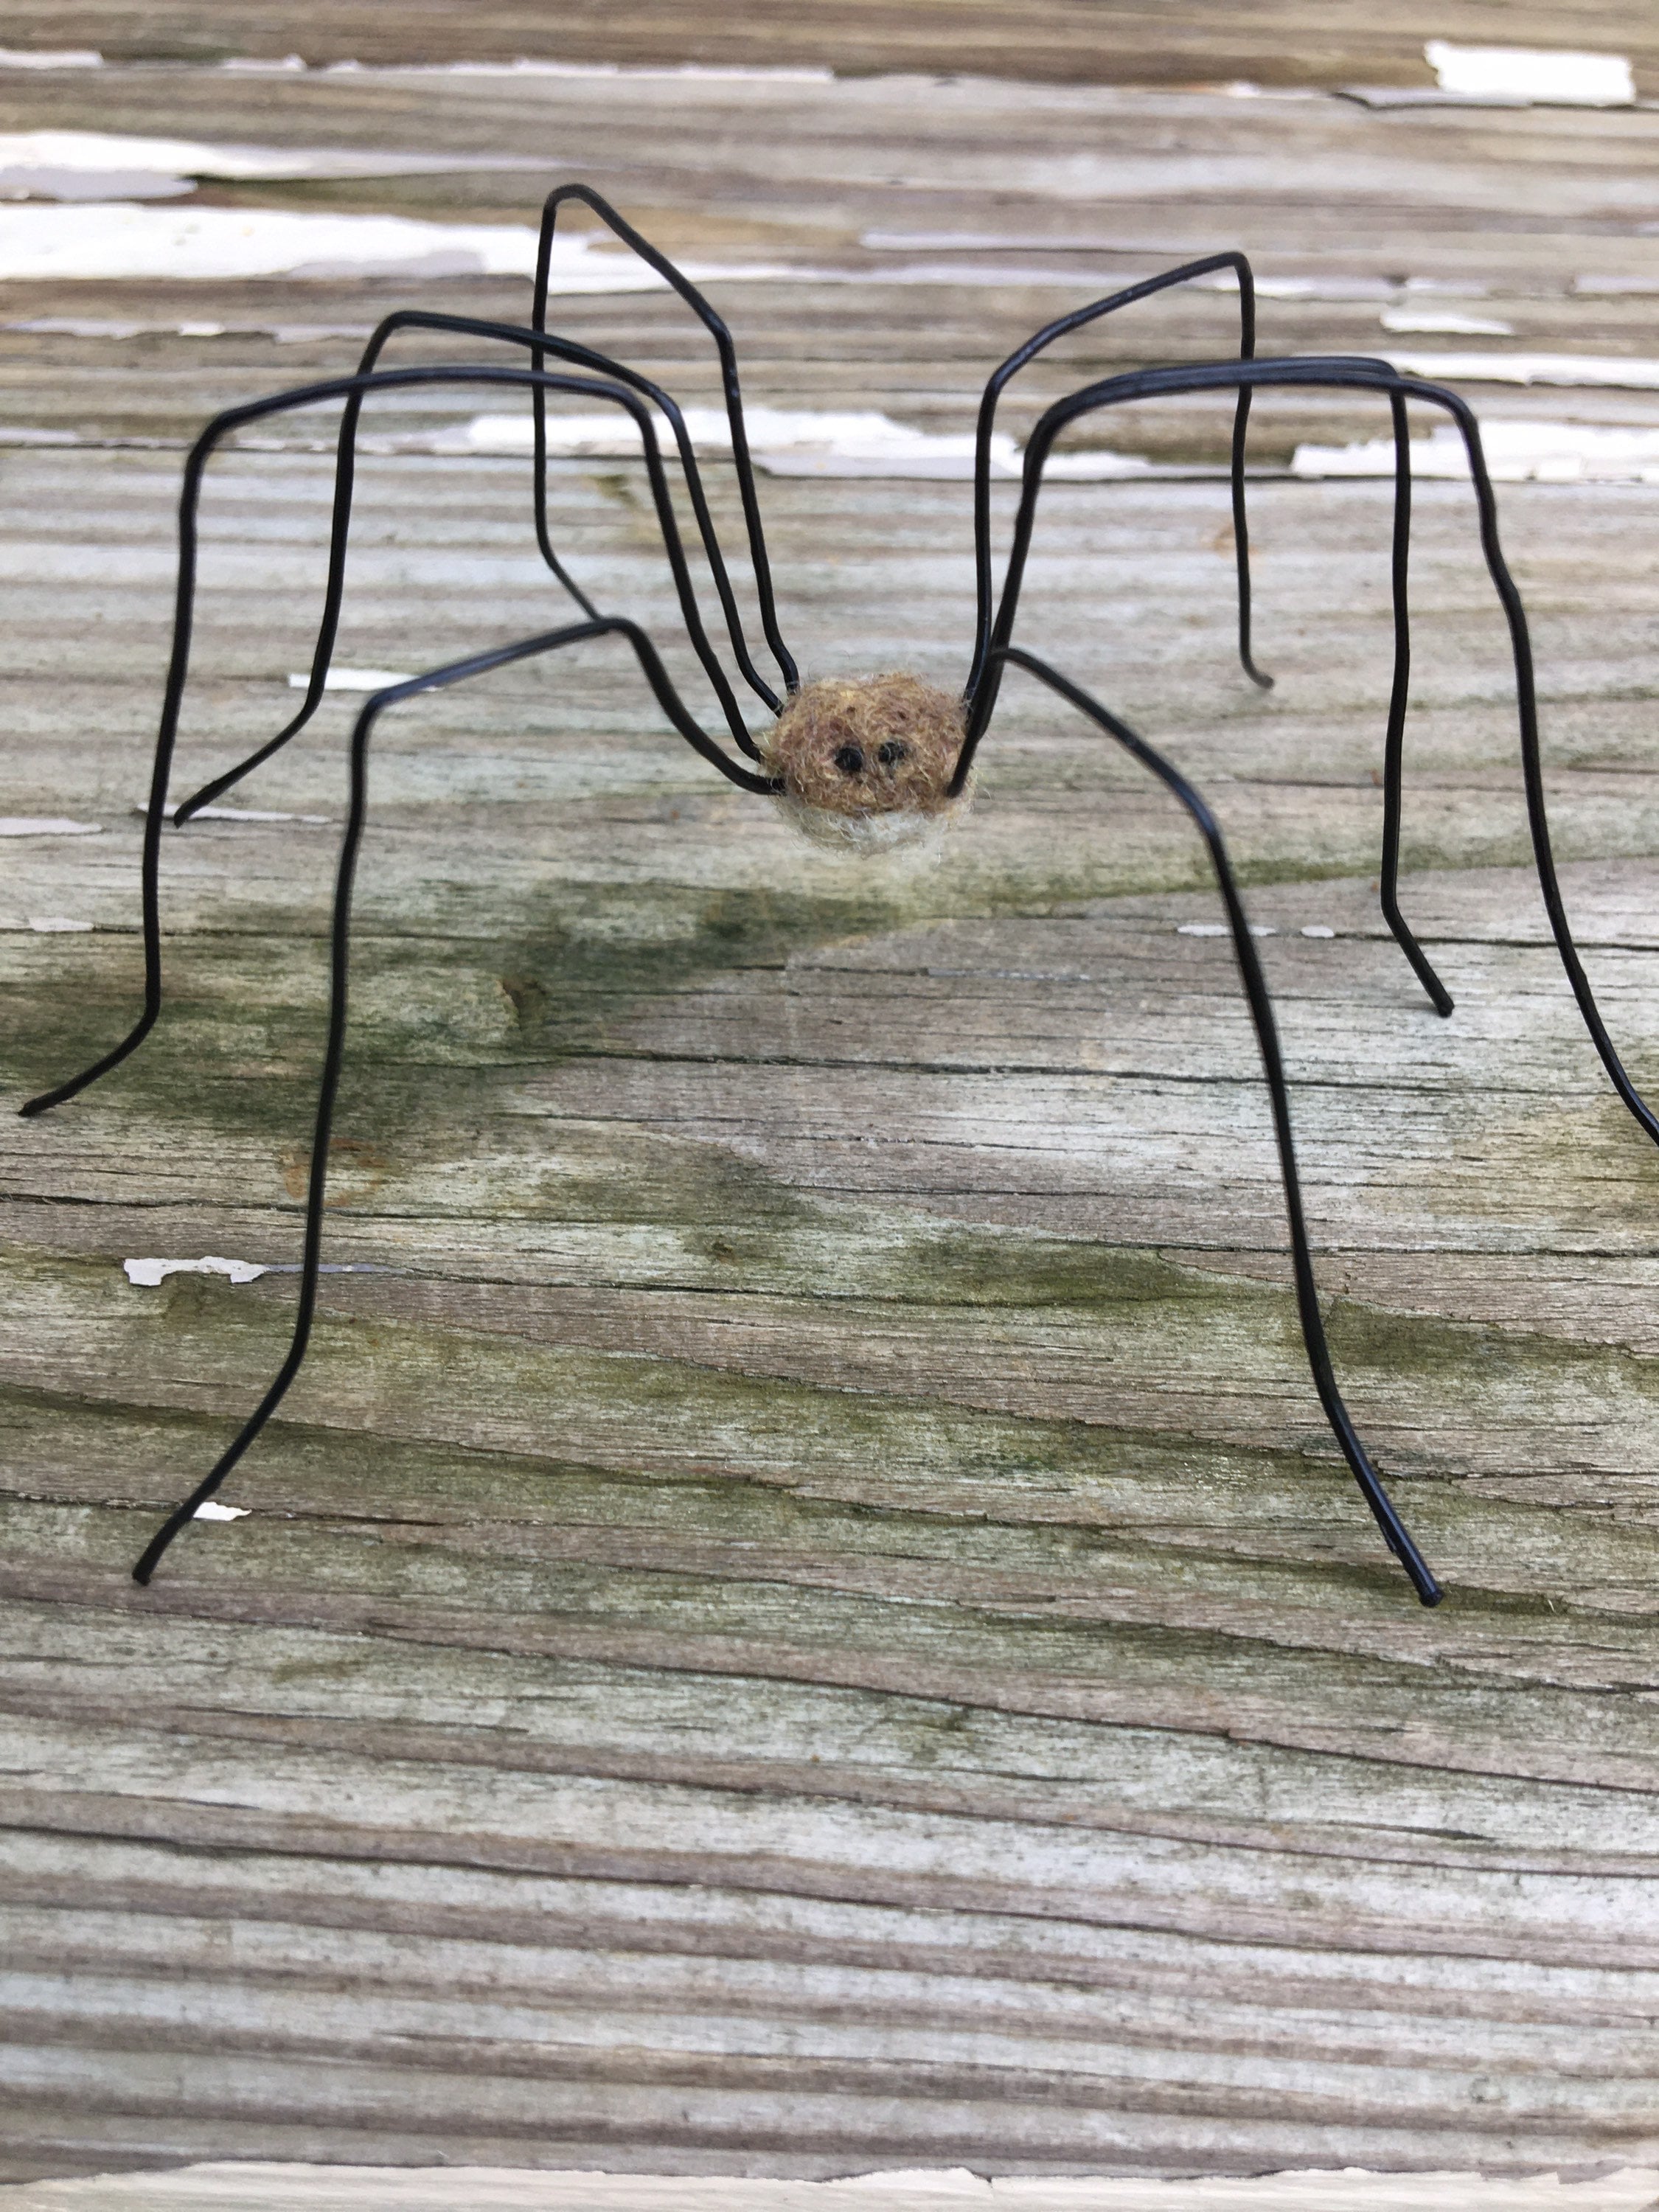 Daddy Long Legs Spiders - Backyard Buddies